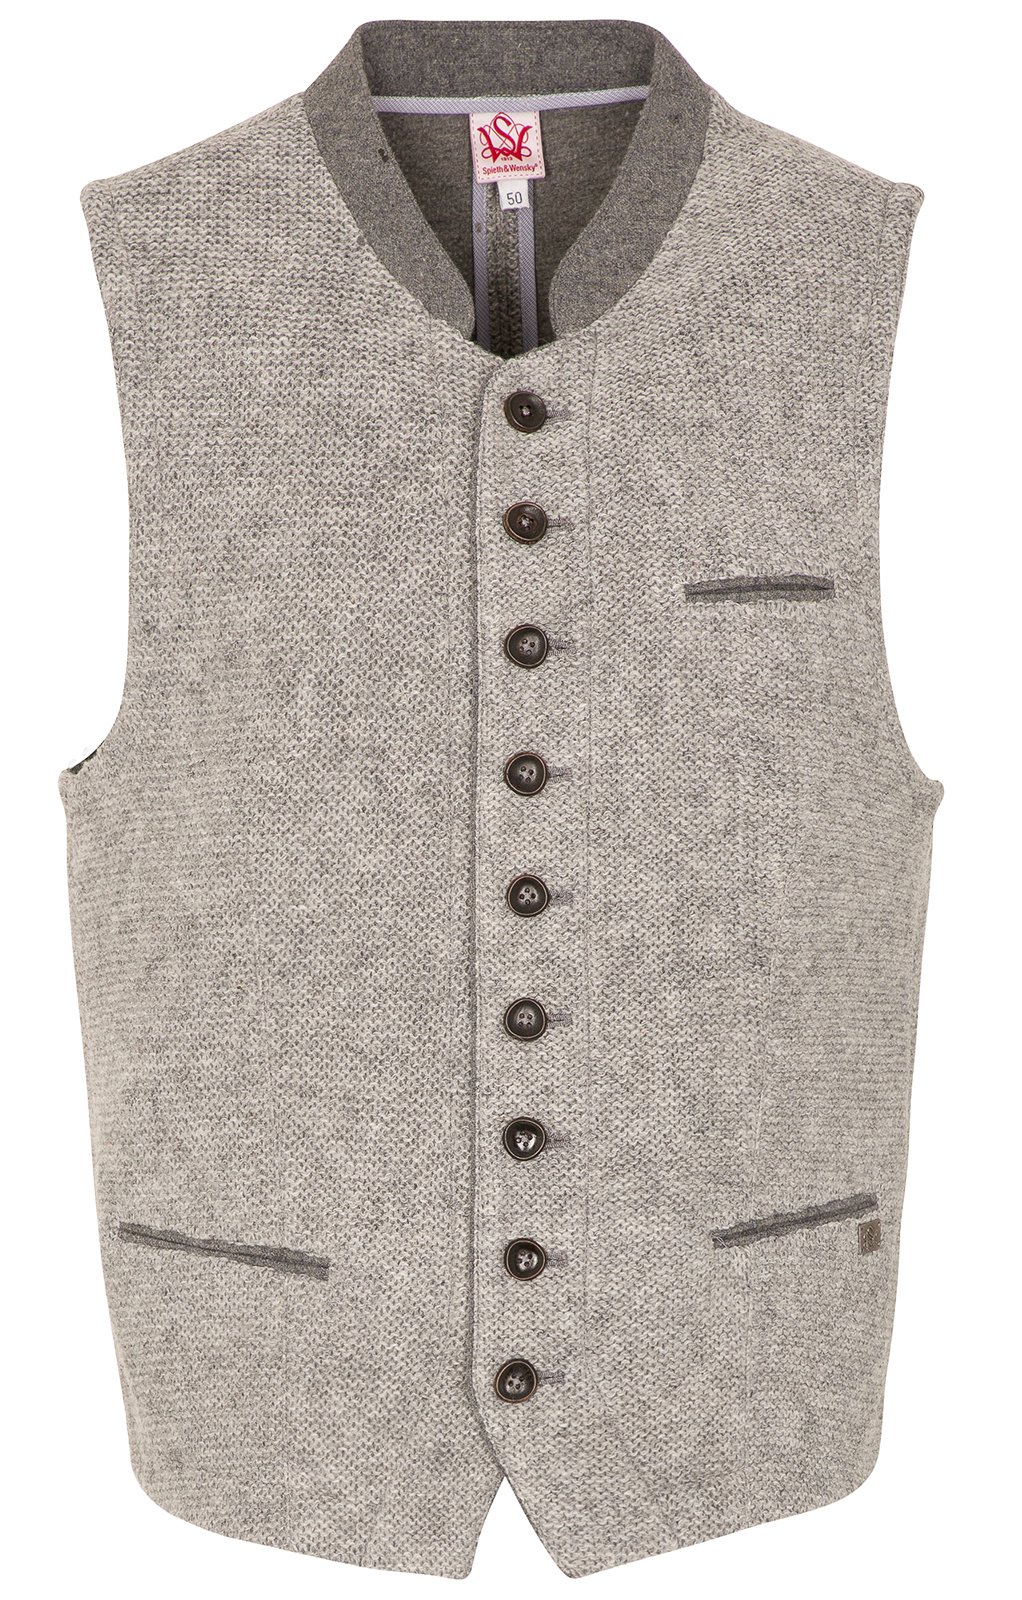 weitere Bilder von German knitted waistcoat KNALLER SW light gray